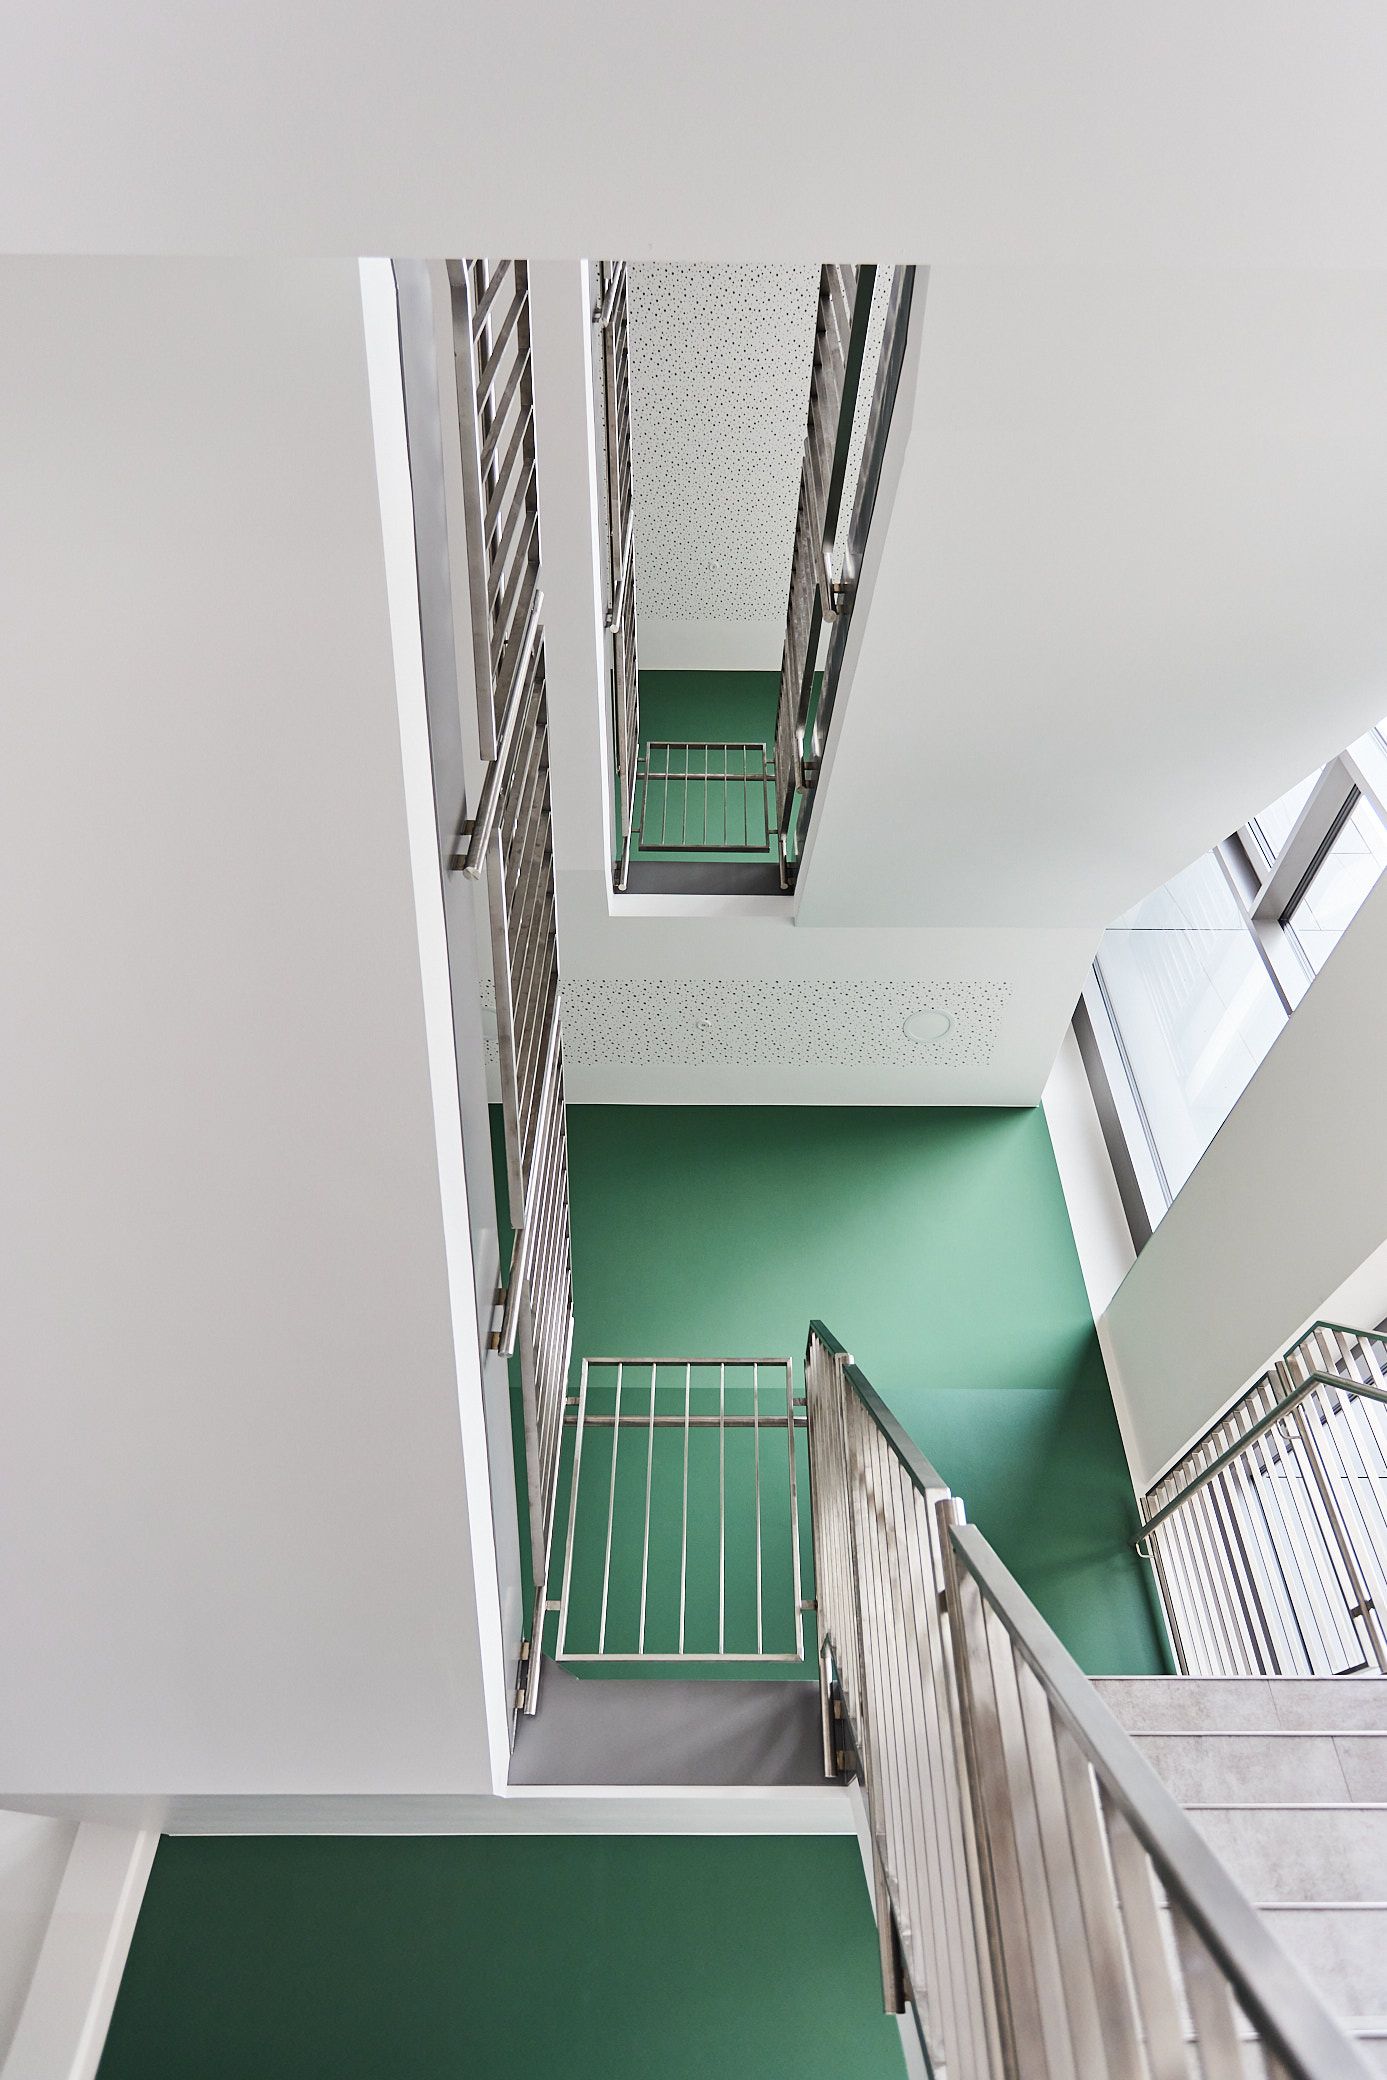 Treppenhaus. Grüne Wände. Metallhandlauf. Ein Projekt von EPU ARCHITEKTEN.